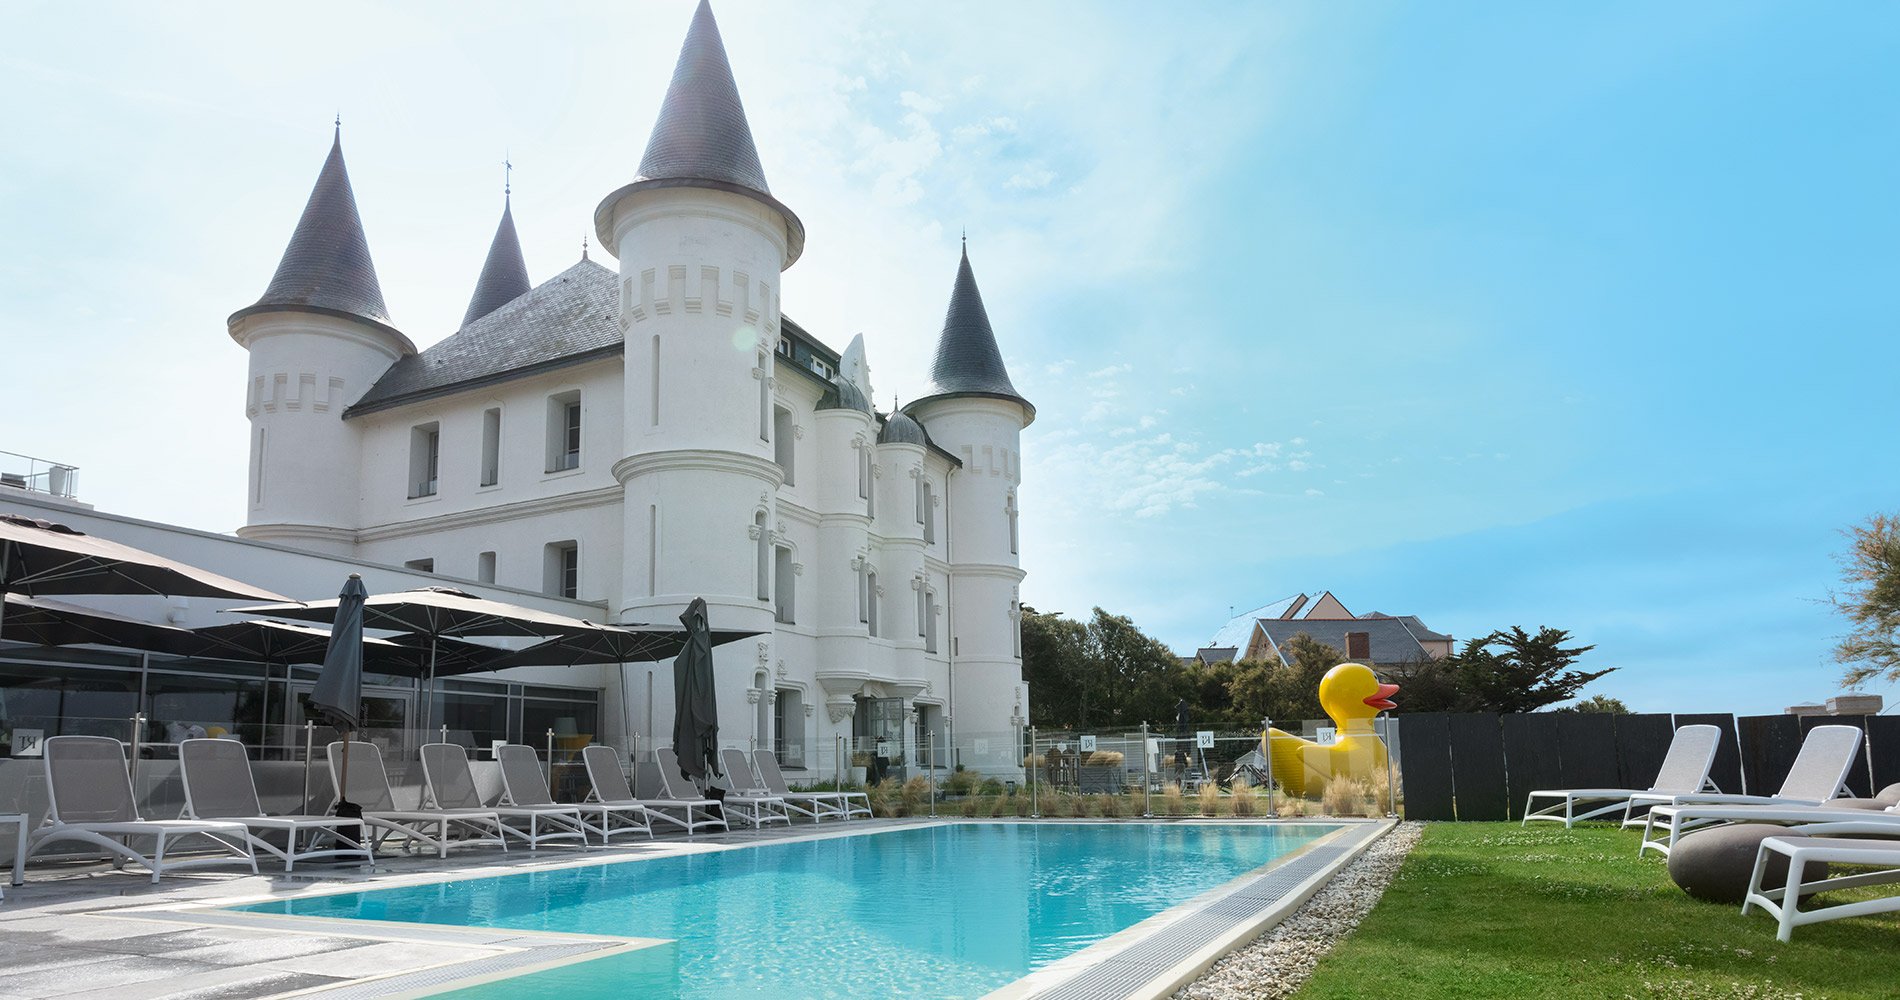 Hôtel de luxe Château des Tourelles Hôtel 4 étoiles Thalasso Spa Baie de La Baule France piscine